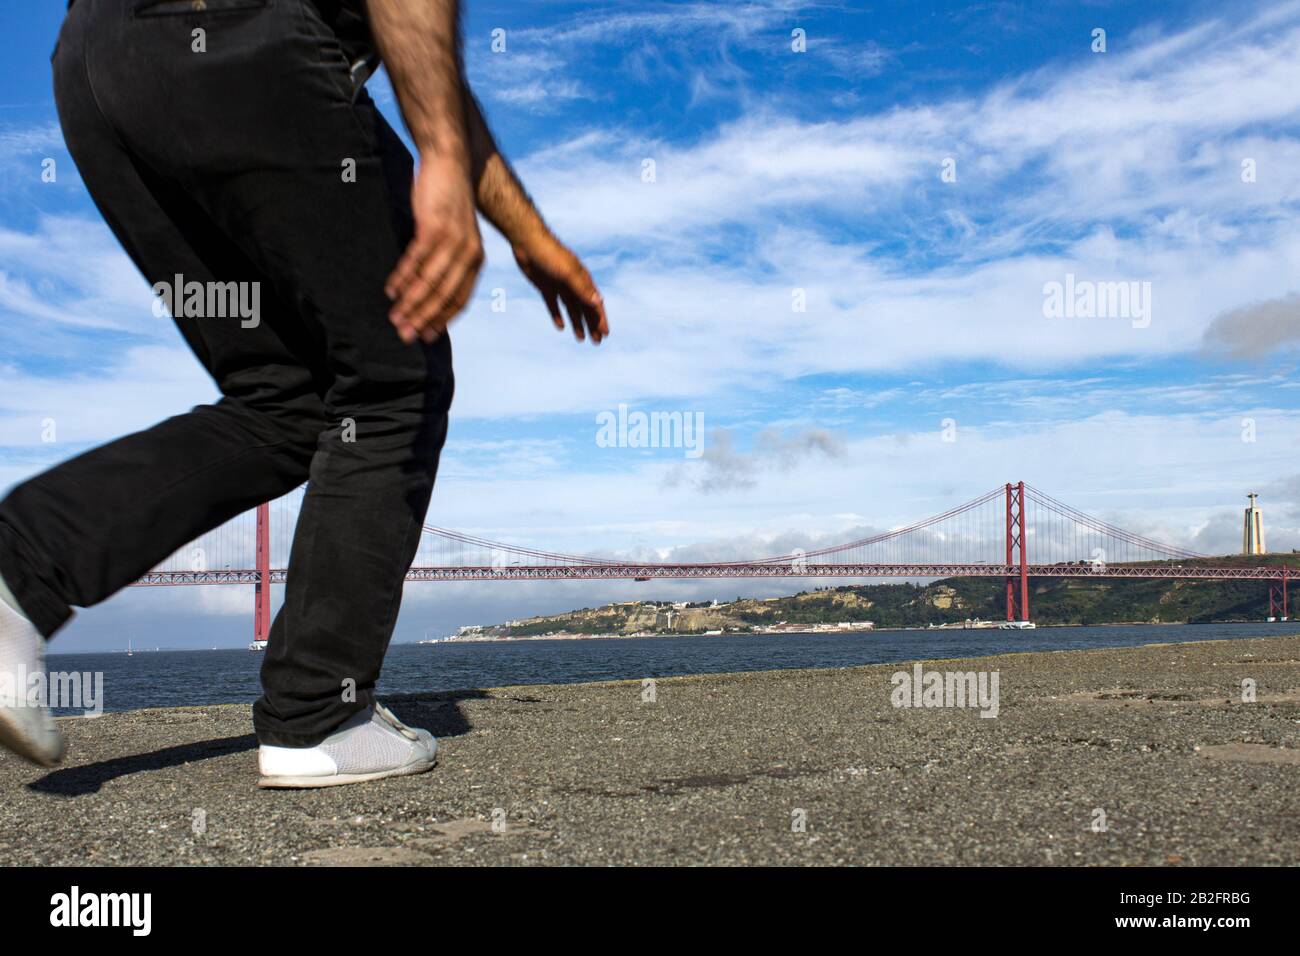 Immagine a basso angolo della metà Inferiore del corpo di un uomo in corsa visto di fronte al ponte 25 de Abril a Lisbona, Portogallo, in una giornata estiva con sk blu Foto Stock